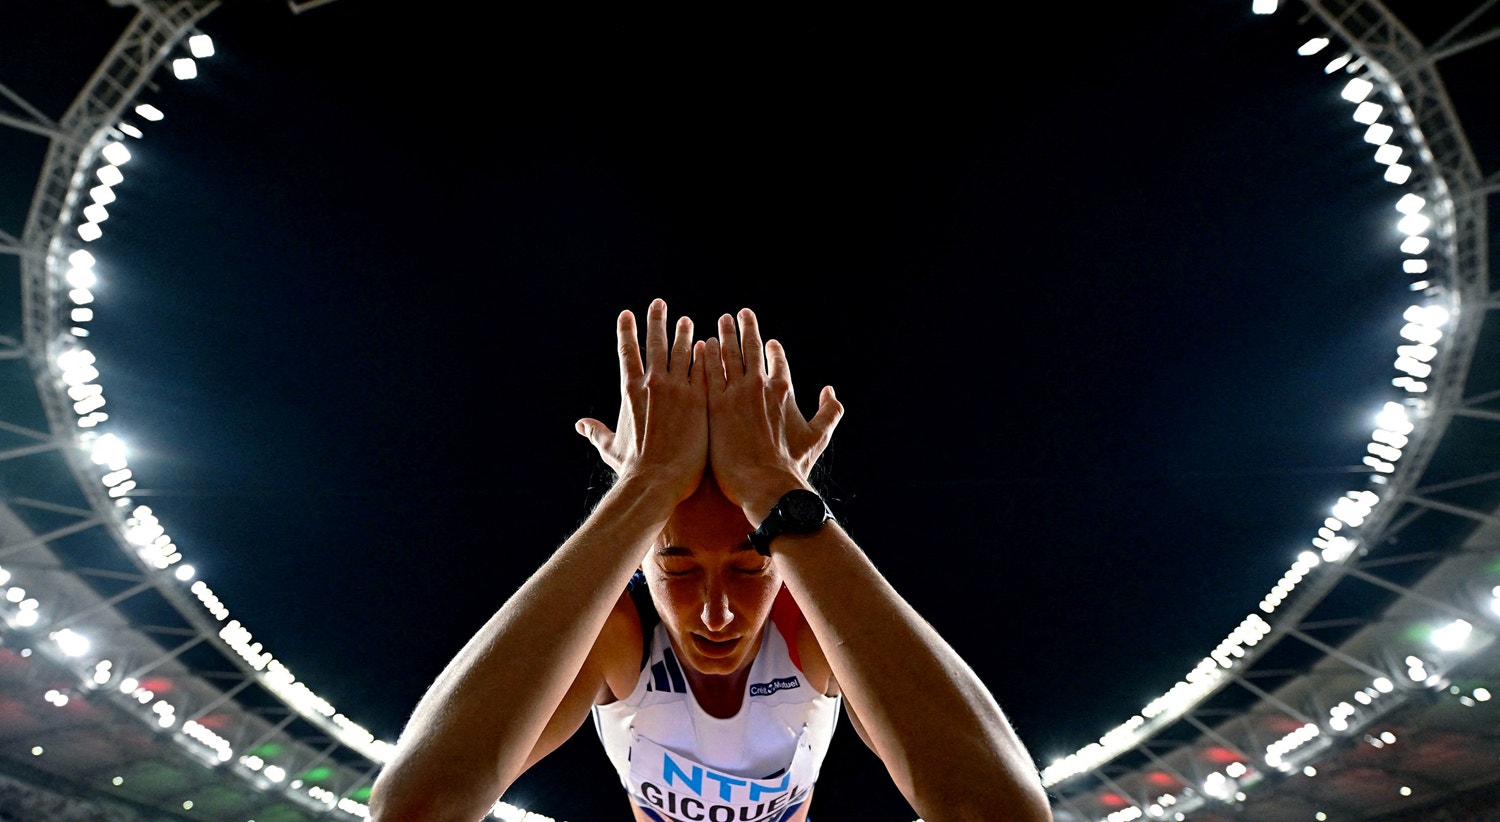  Solene Gicquel. Campeonato Mundial de Atletismo - Final do Salto em Altura Feminino - Centro Nacional de Atletismo, Budapeste, Hungria - 27 de agosto | Marton Monus - Reuters 